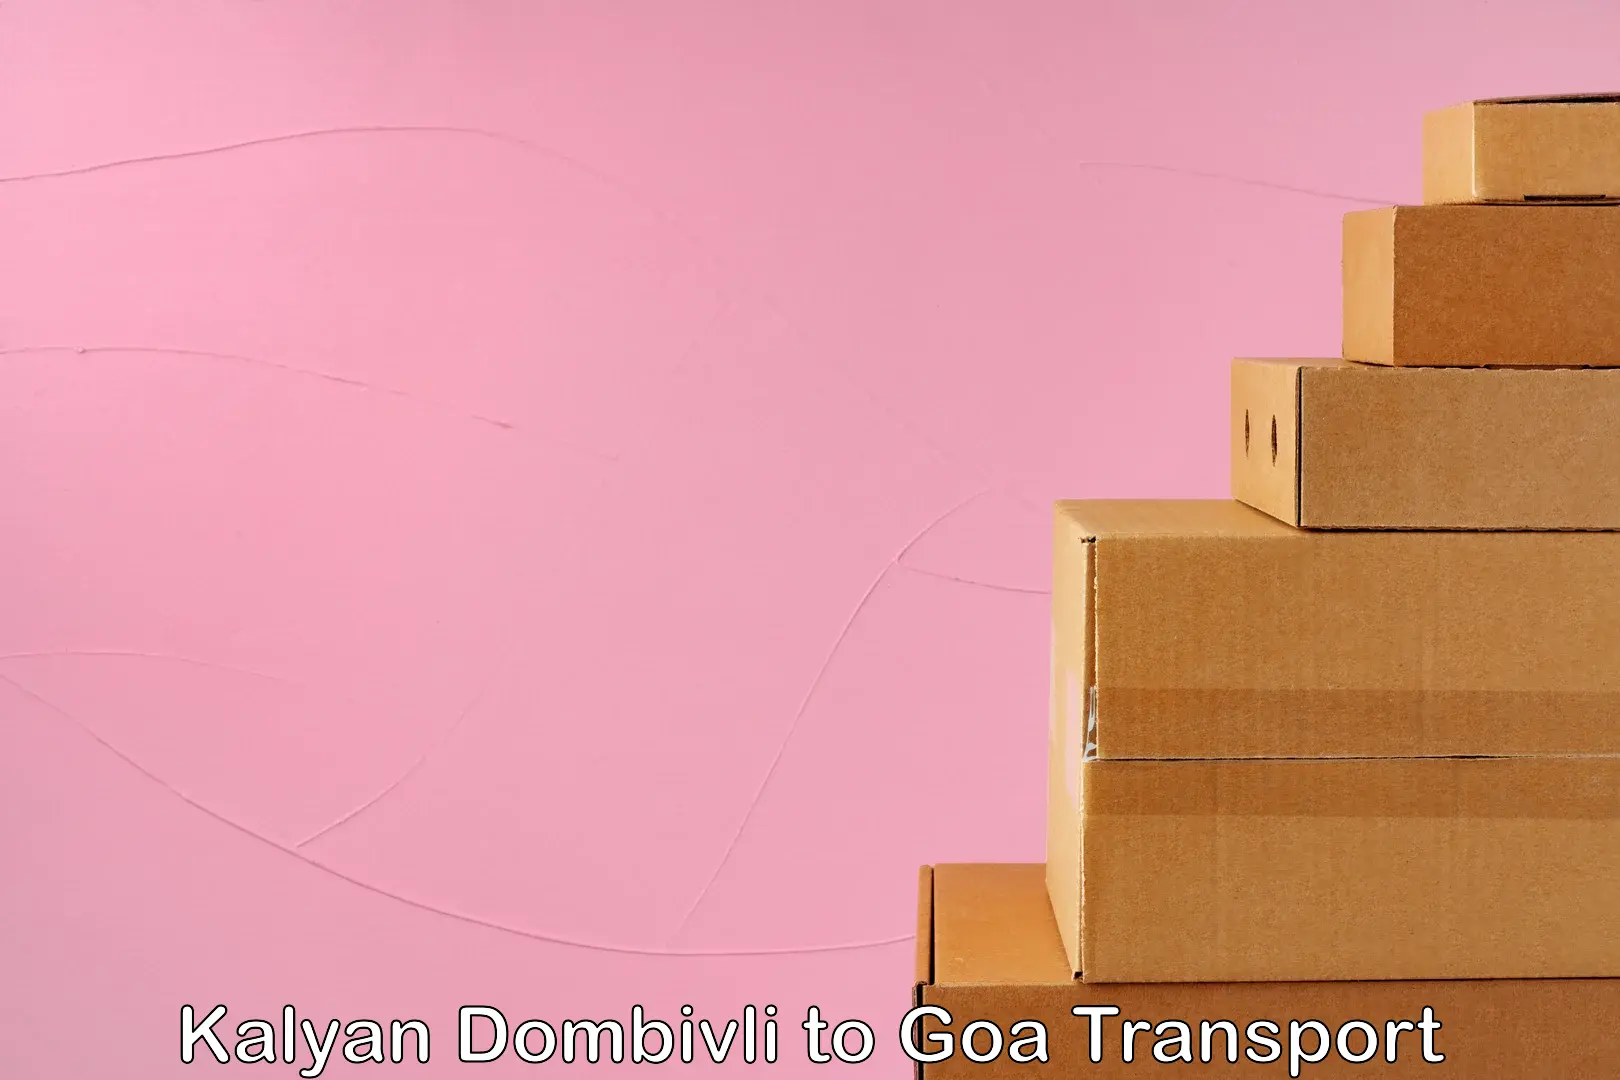 Daily parcel service transport Kalyan Dombivli to Goa